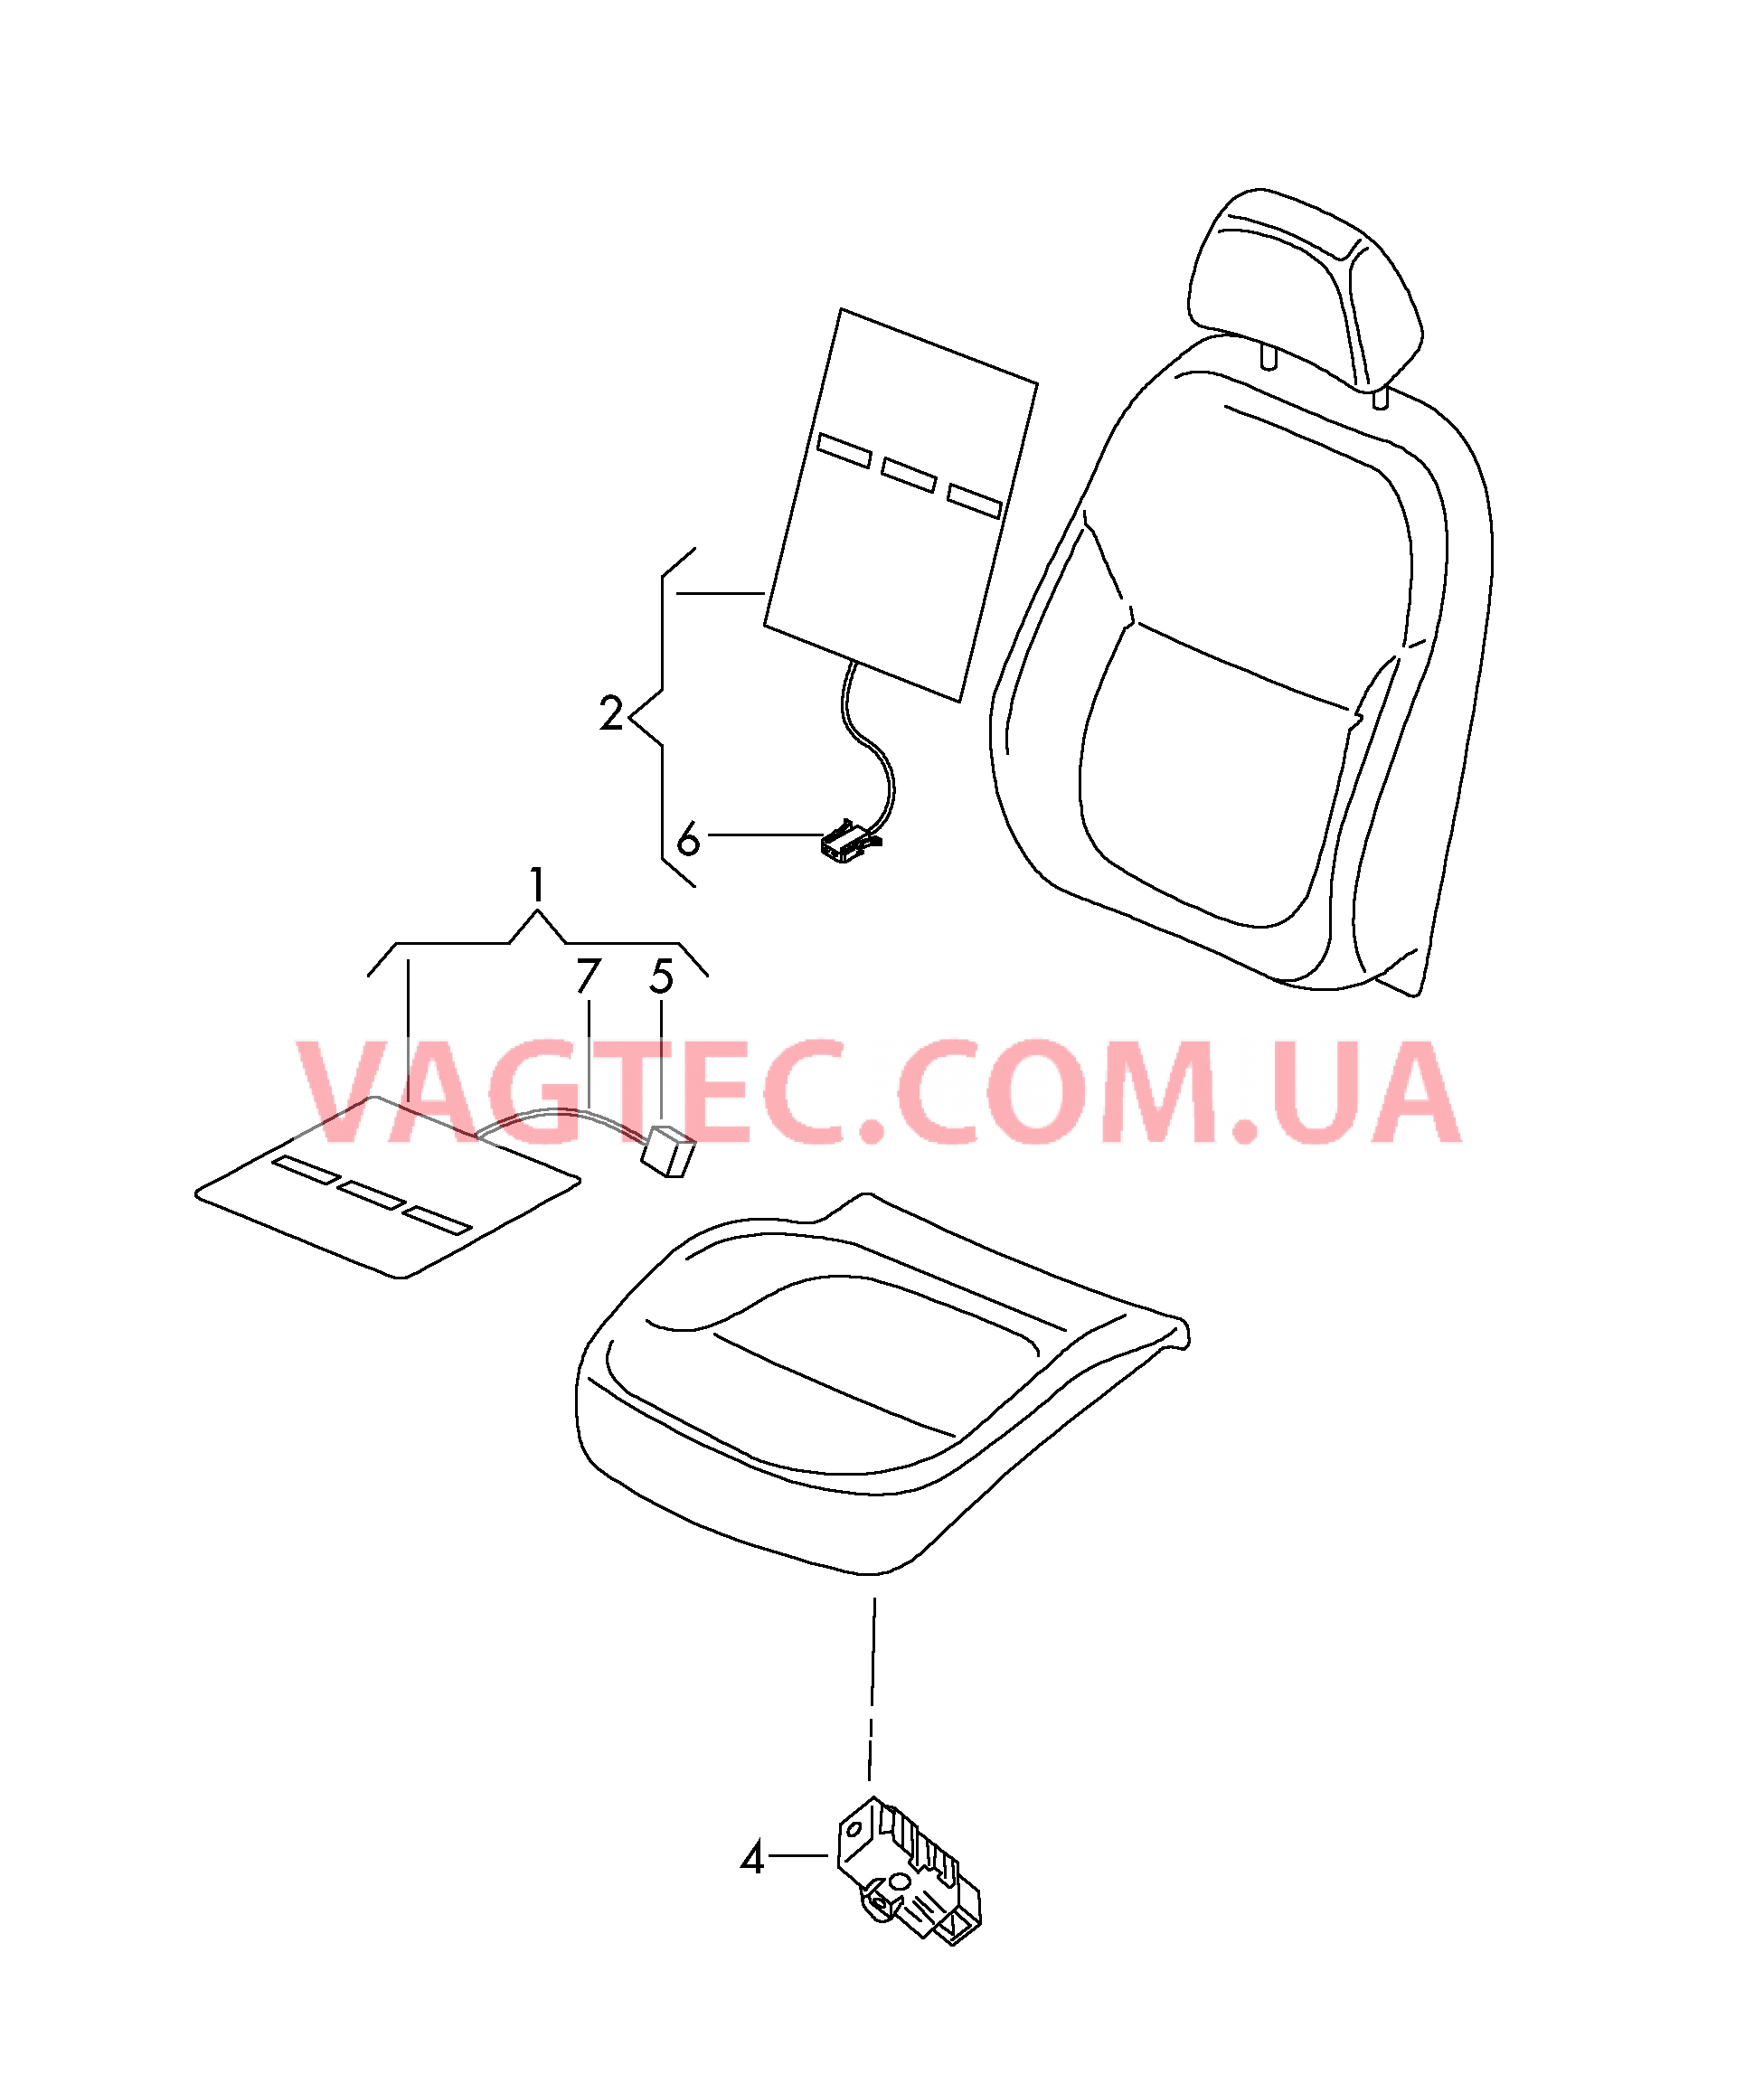 Подушка сиденья и спинка с обогревом  для SKODA YETI 2017